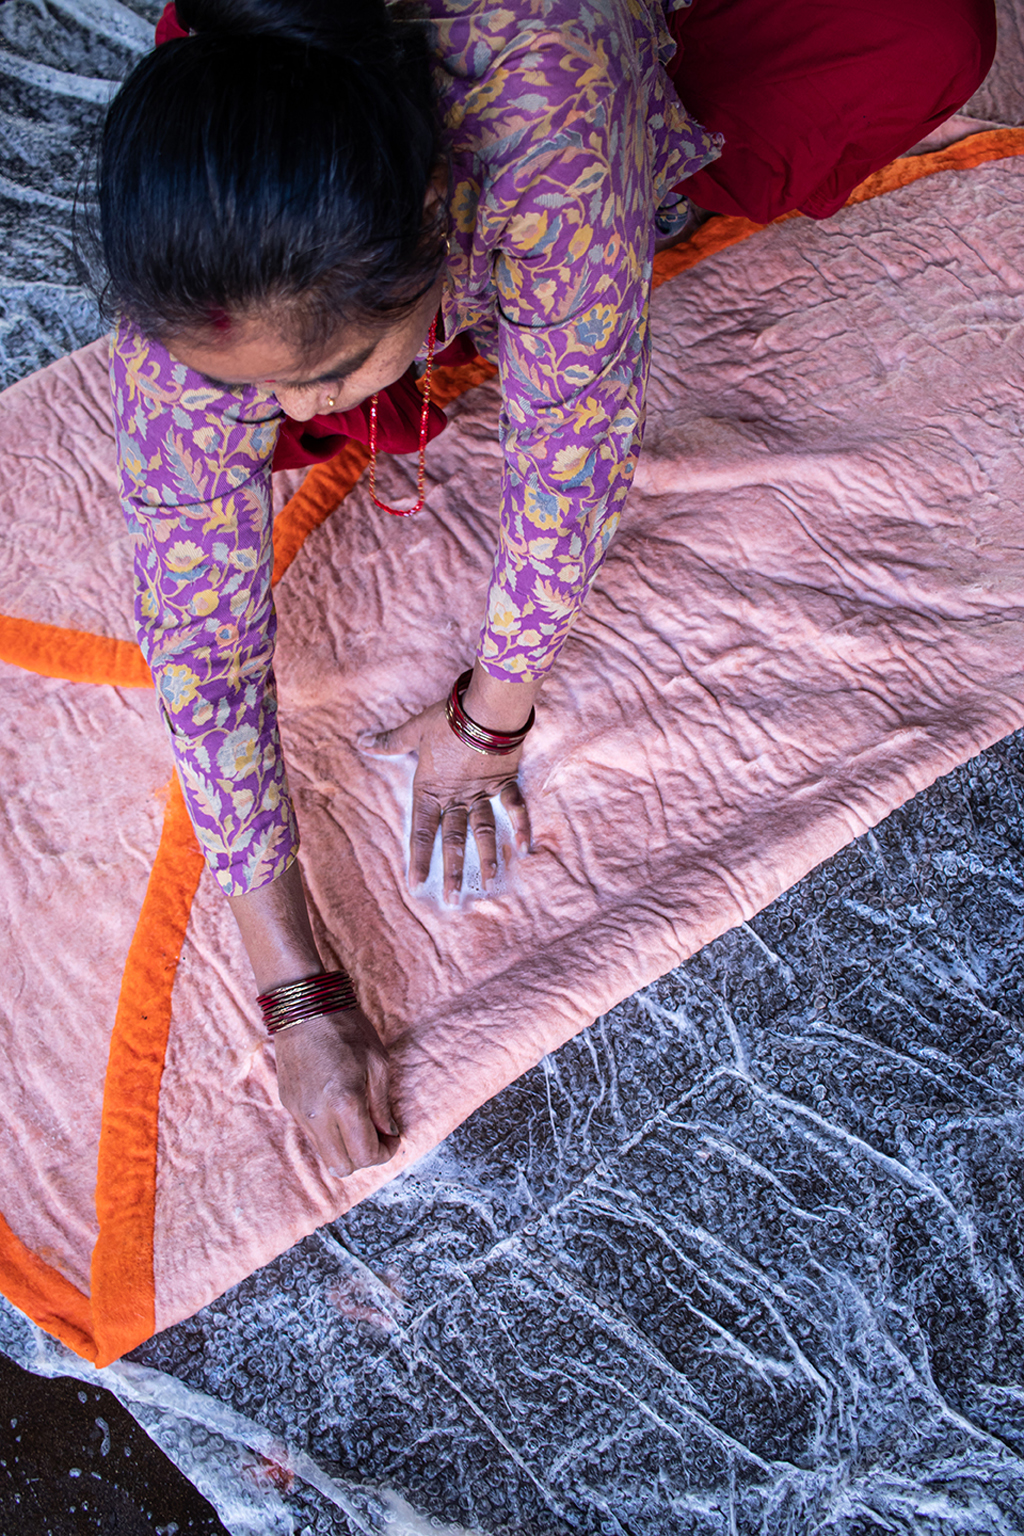 Artisane népalaise en train de confectionner un tapis rond orange et rose en feutre de laine avec de l'eau et du savon